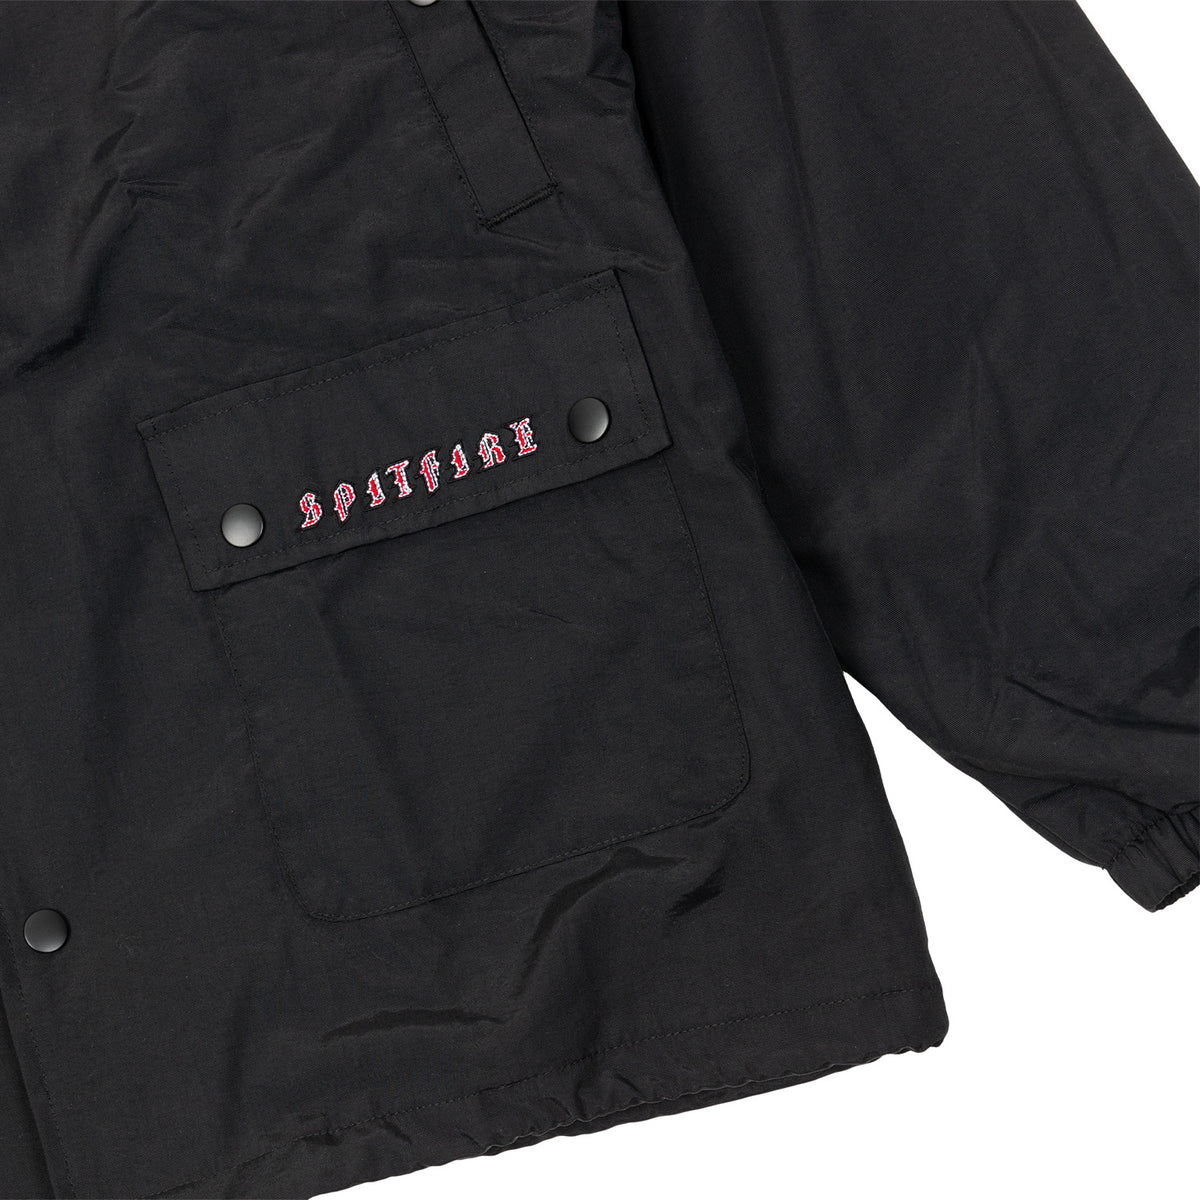 Spitfire Old E Embroidered Jacket